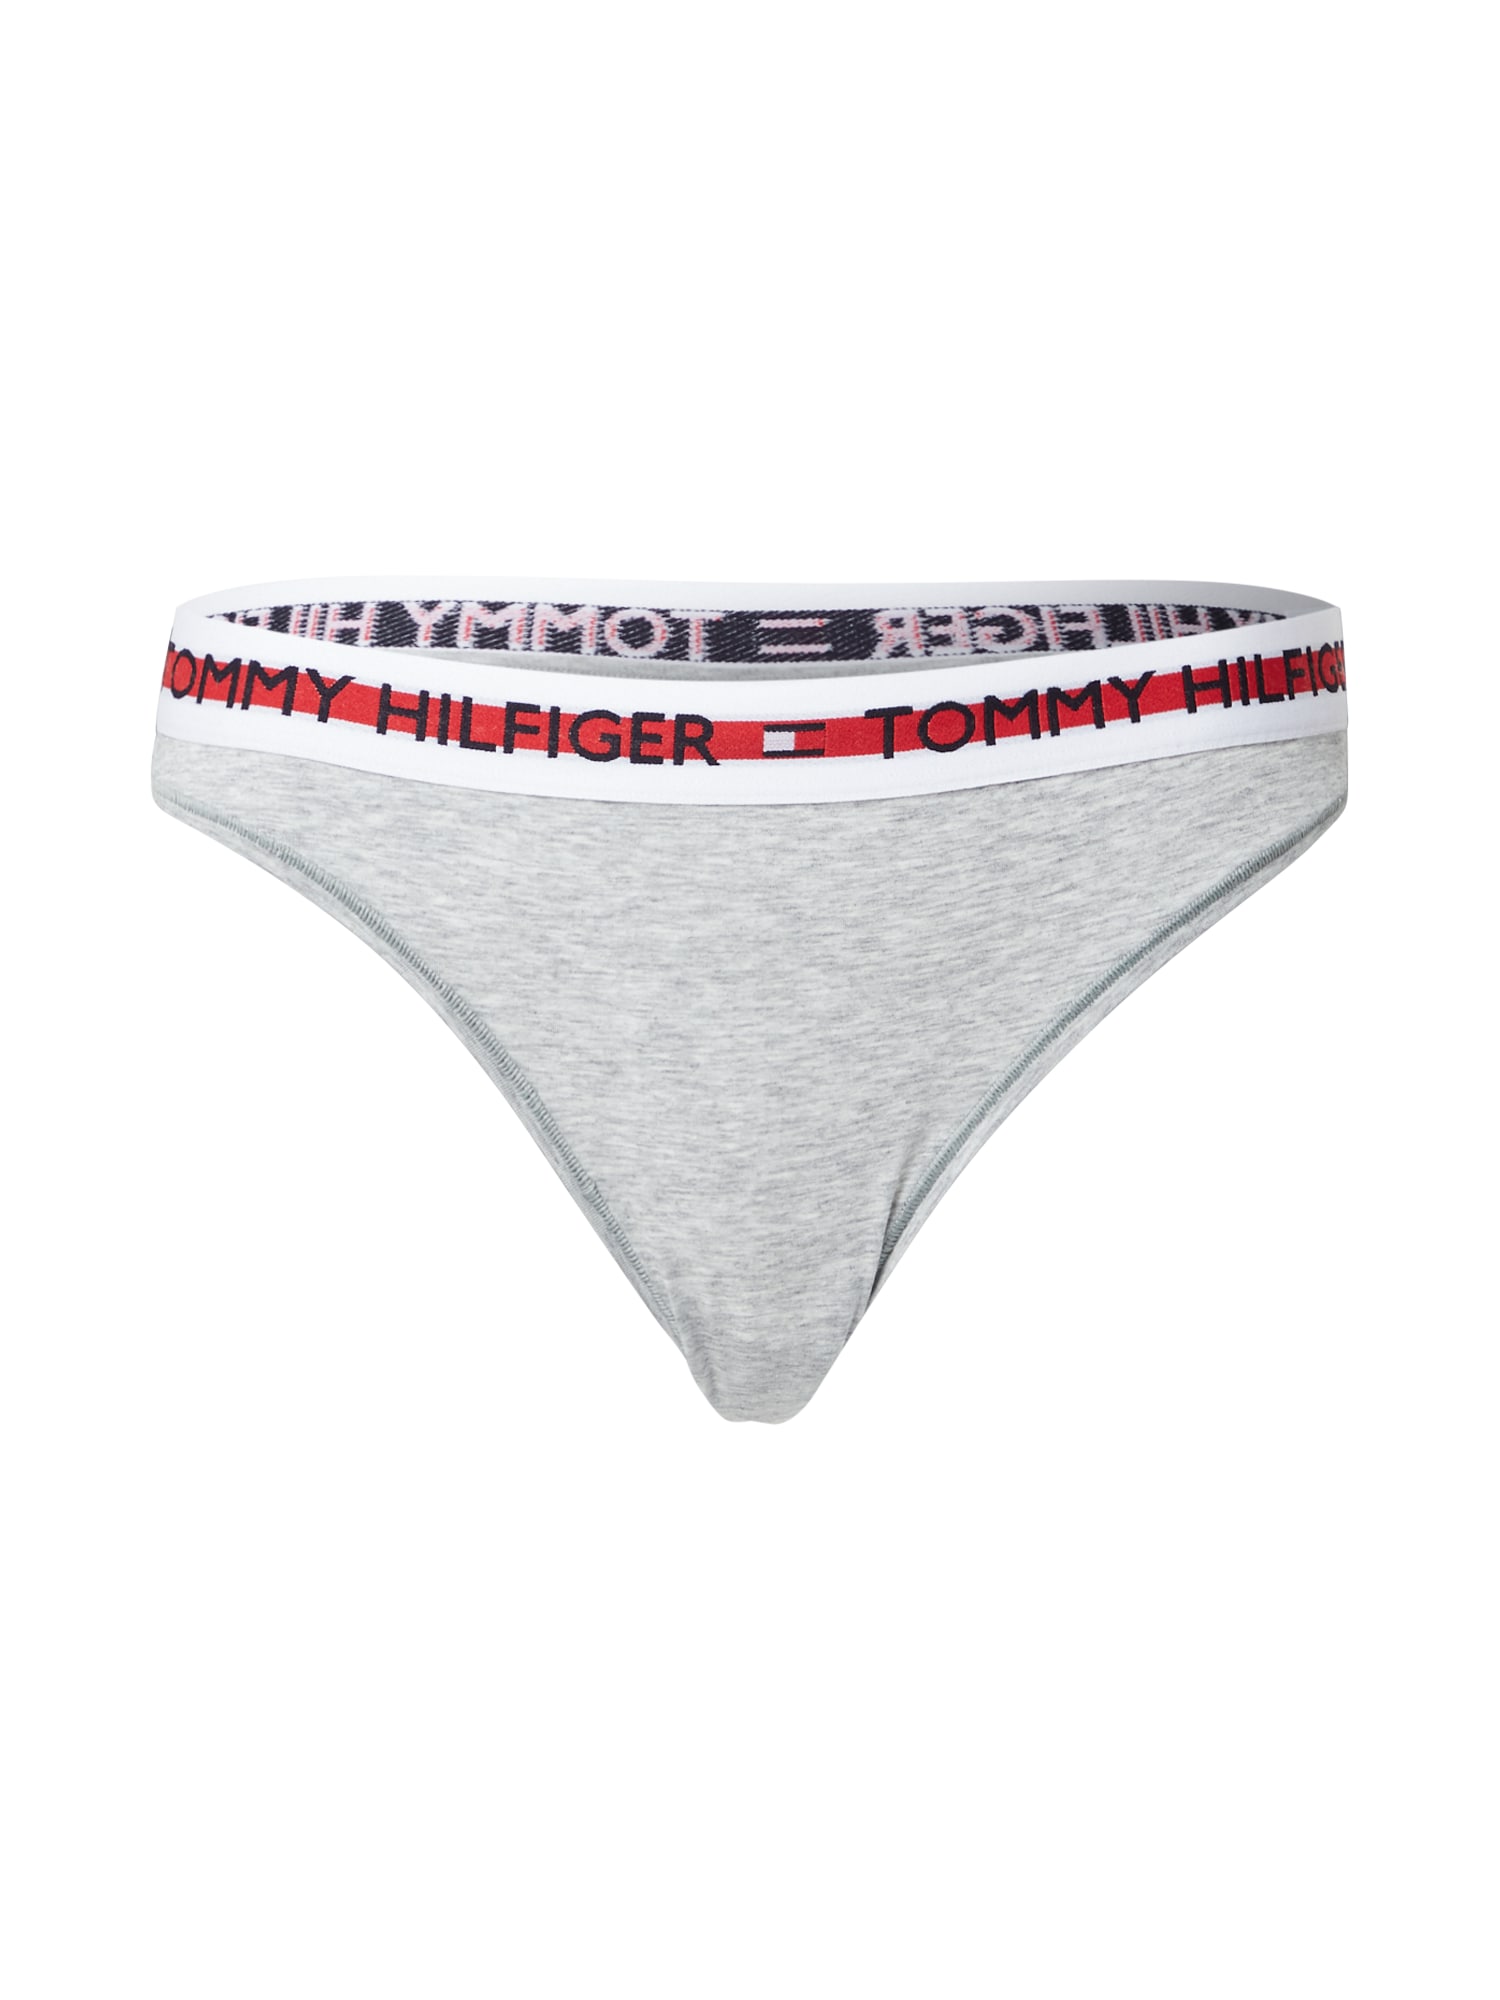 Tommy Hilfiger Underwear Siaurikės tamsiai mėlyna / pilka / raudona / balta